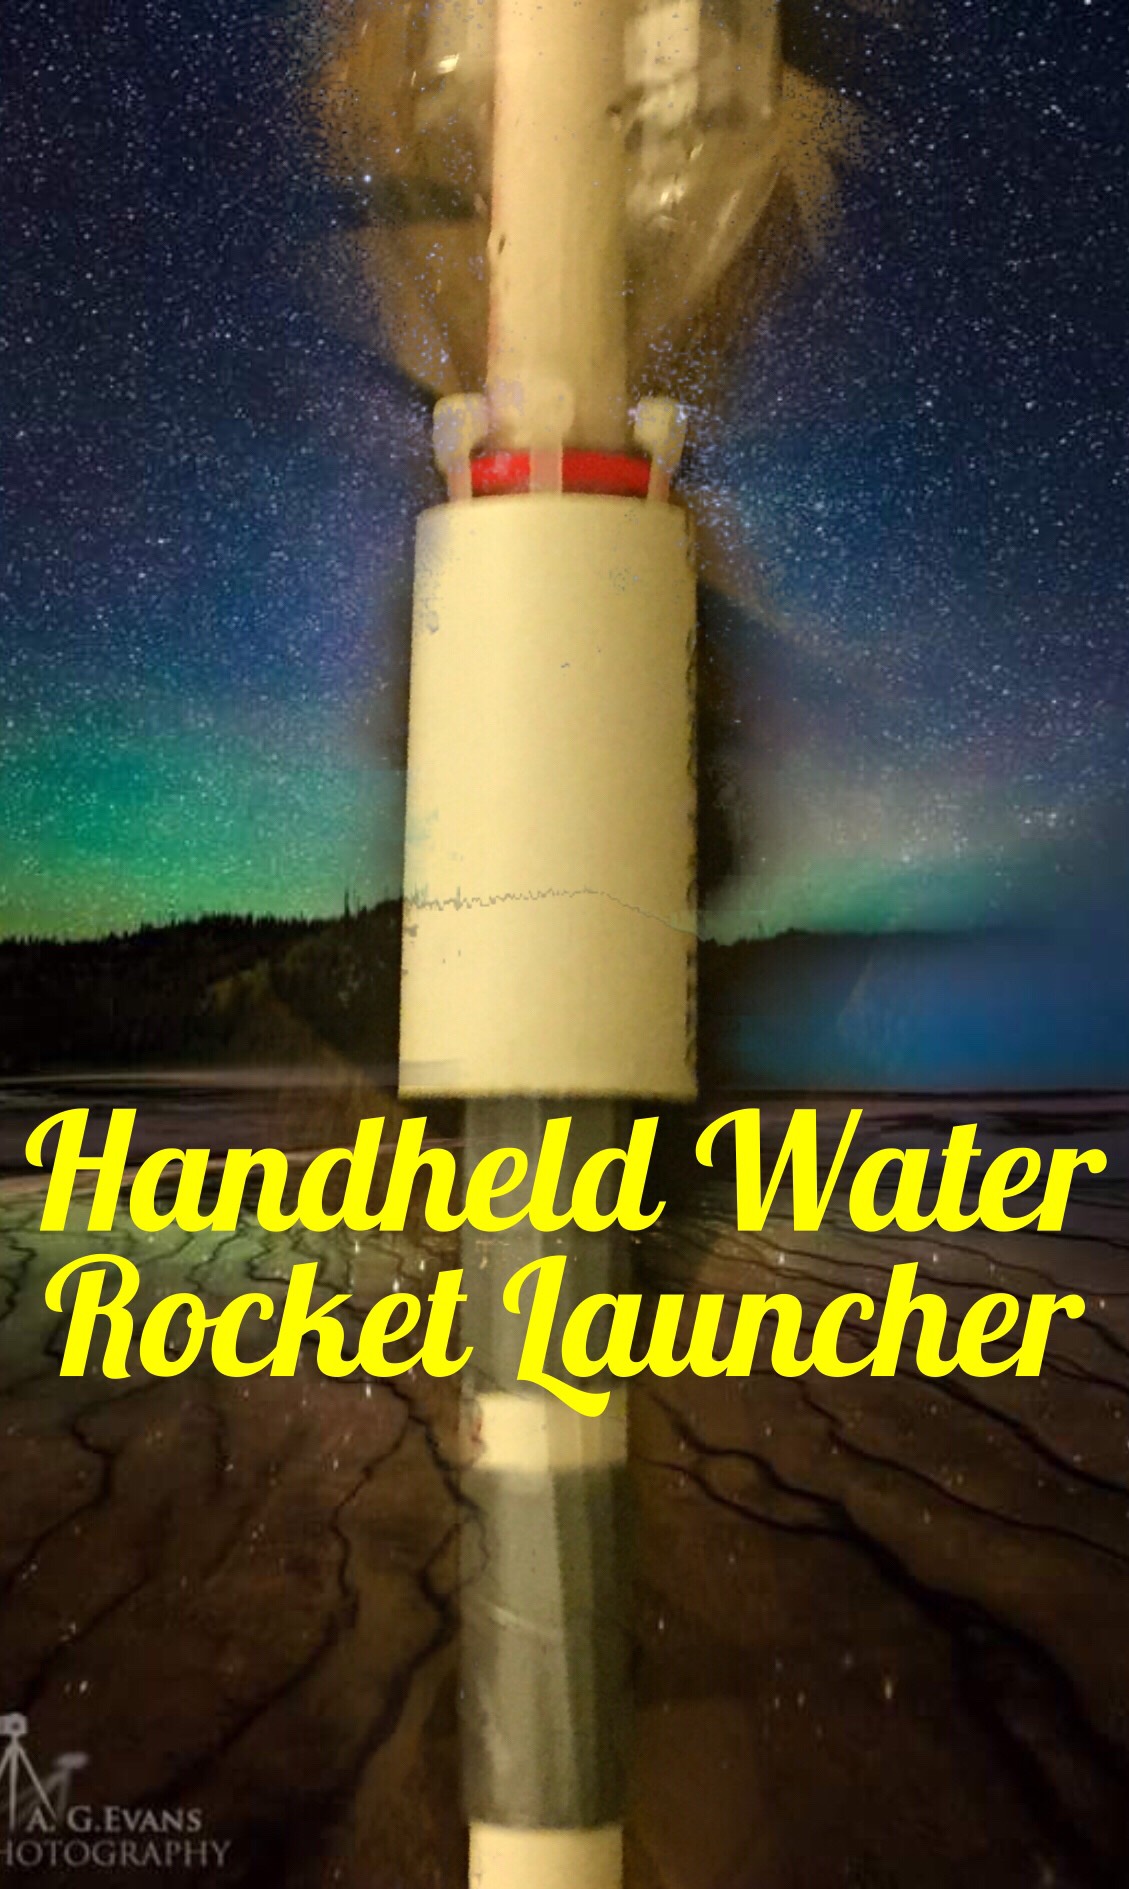 Handheld Water Rocket Launcher!